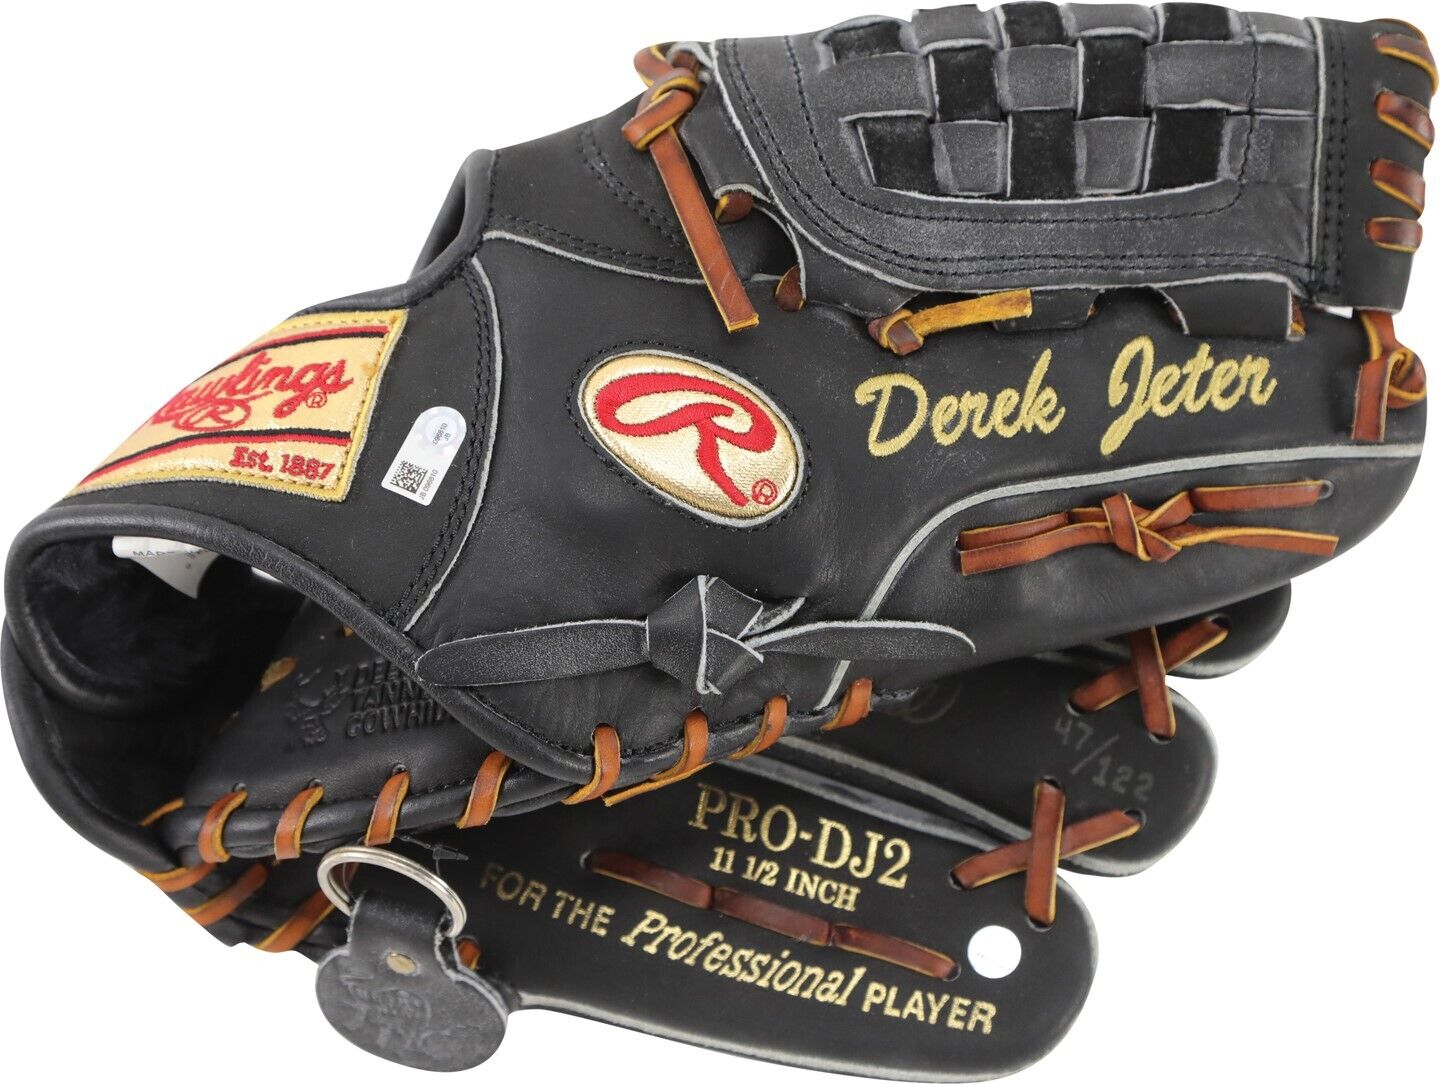 Derek Jeter Signed Rawlings Game Model STATS Baseball Glove Steiner COA